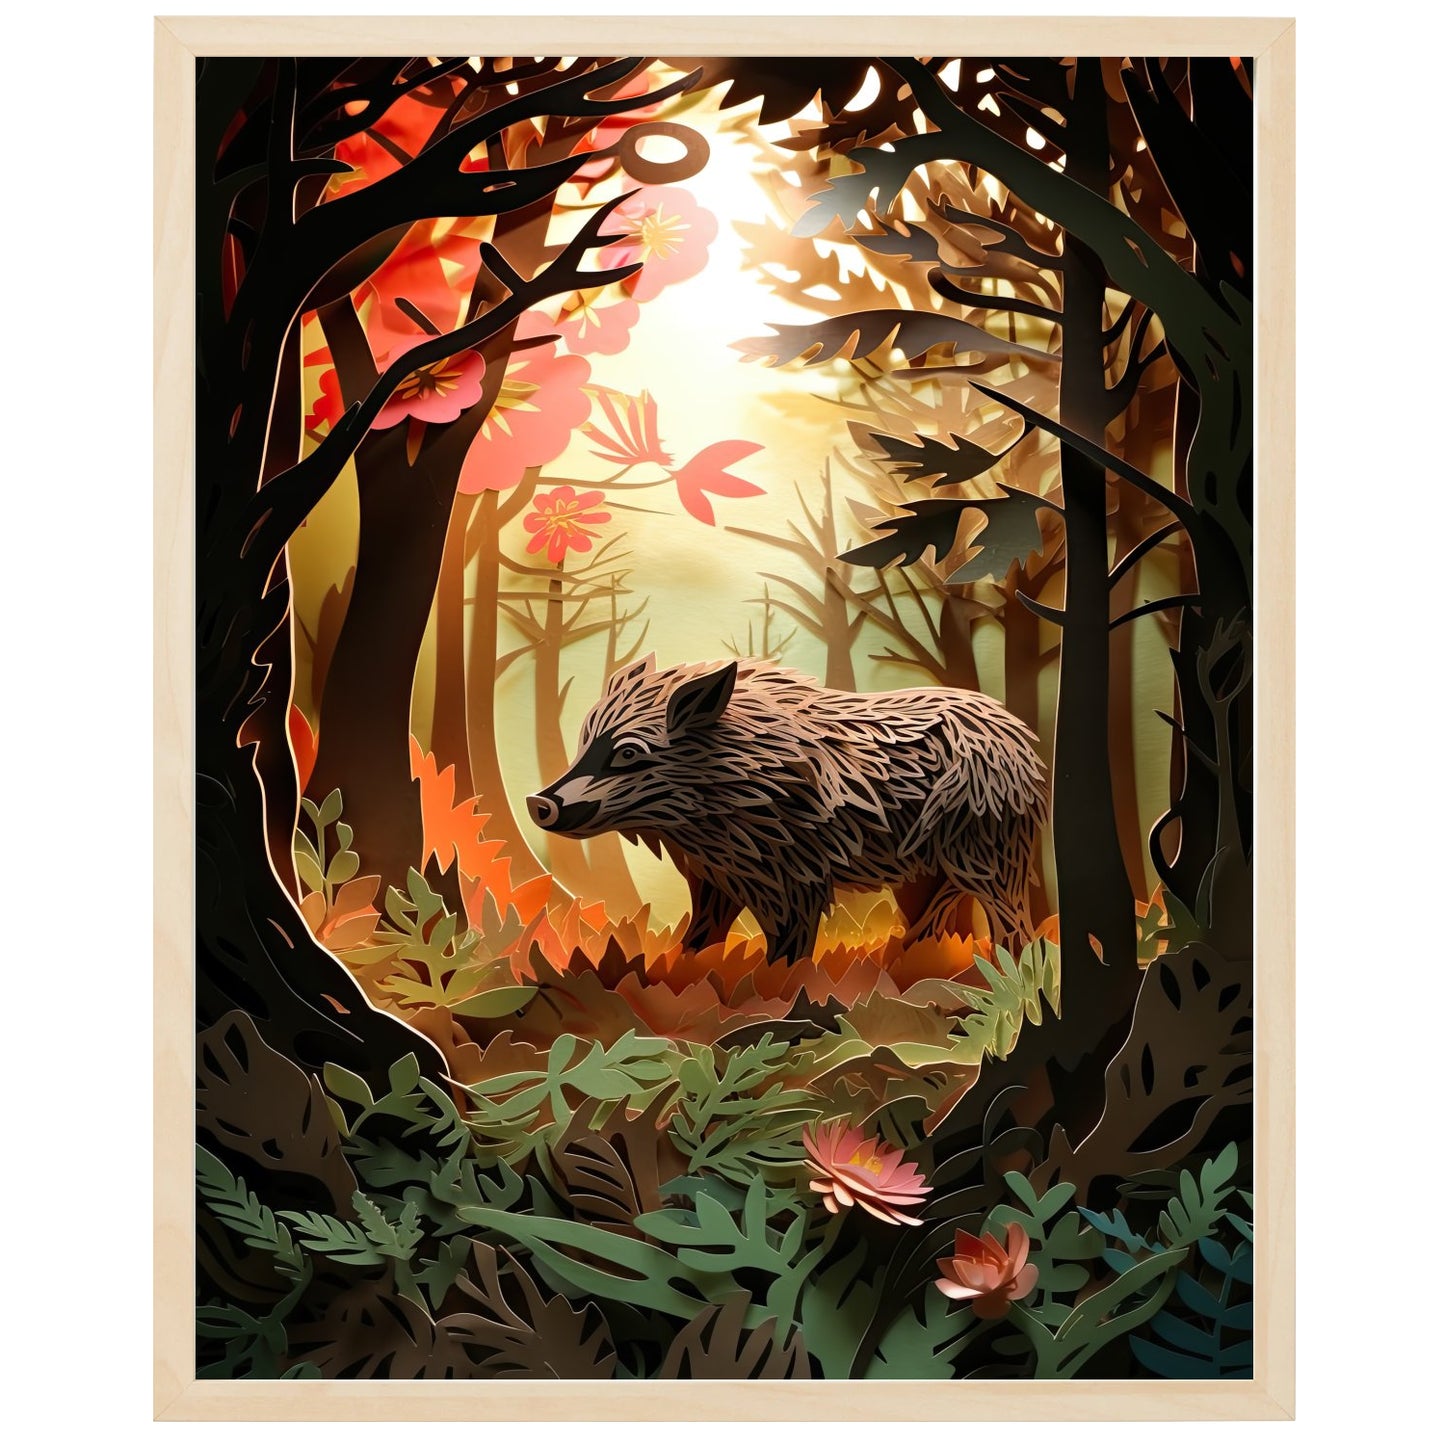 Billede af vildsvin, der søger føde i en skovlysnings helle. Vildsvinet skaber kontrast mellem mørkt skovområde og sollys.